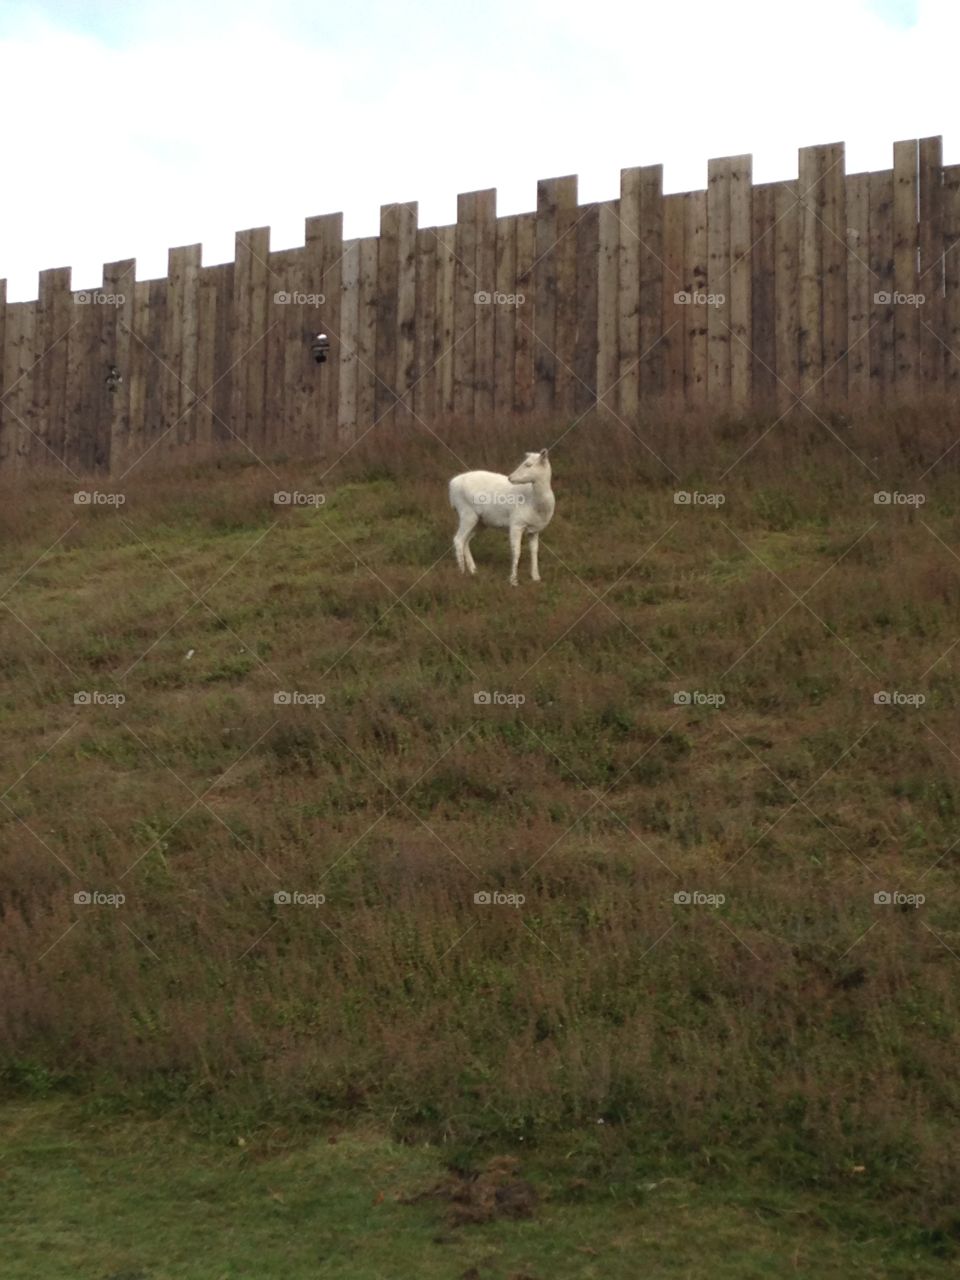 Albino deer
Montfichet Castle